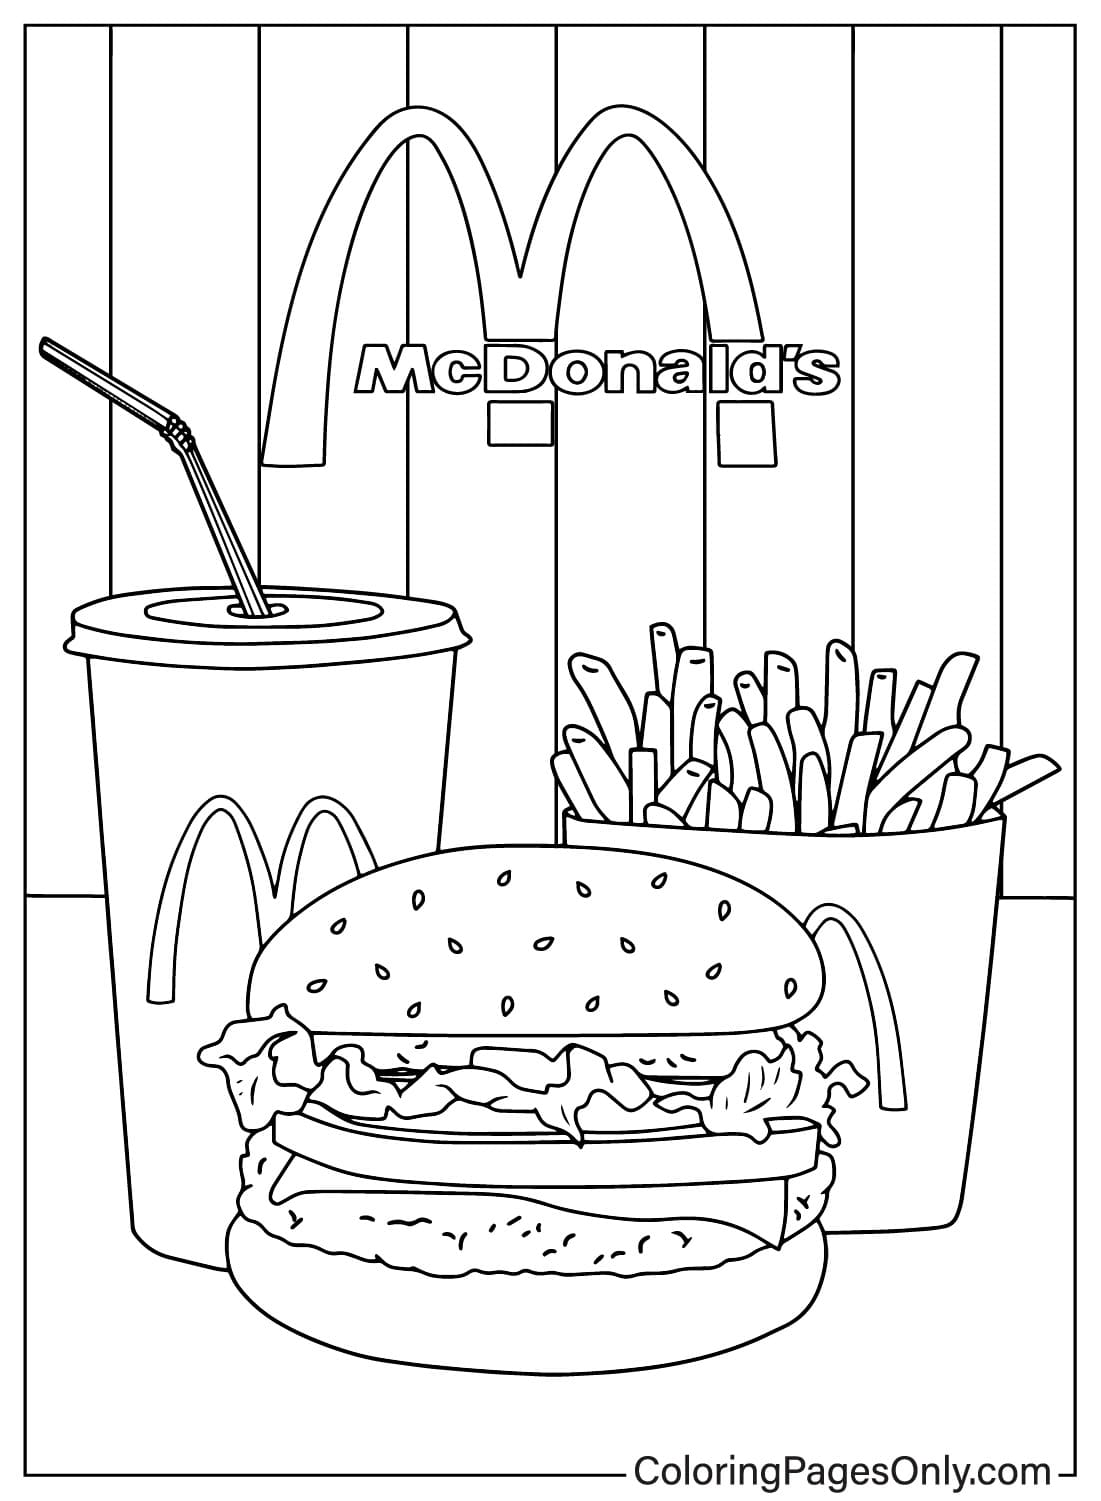 Картинки раскраски Макдональдс из Макдональдса